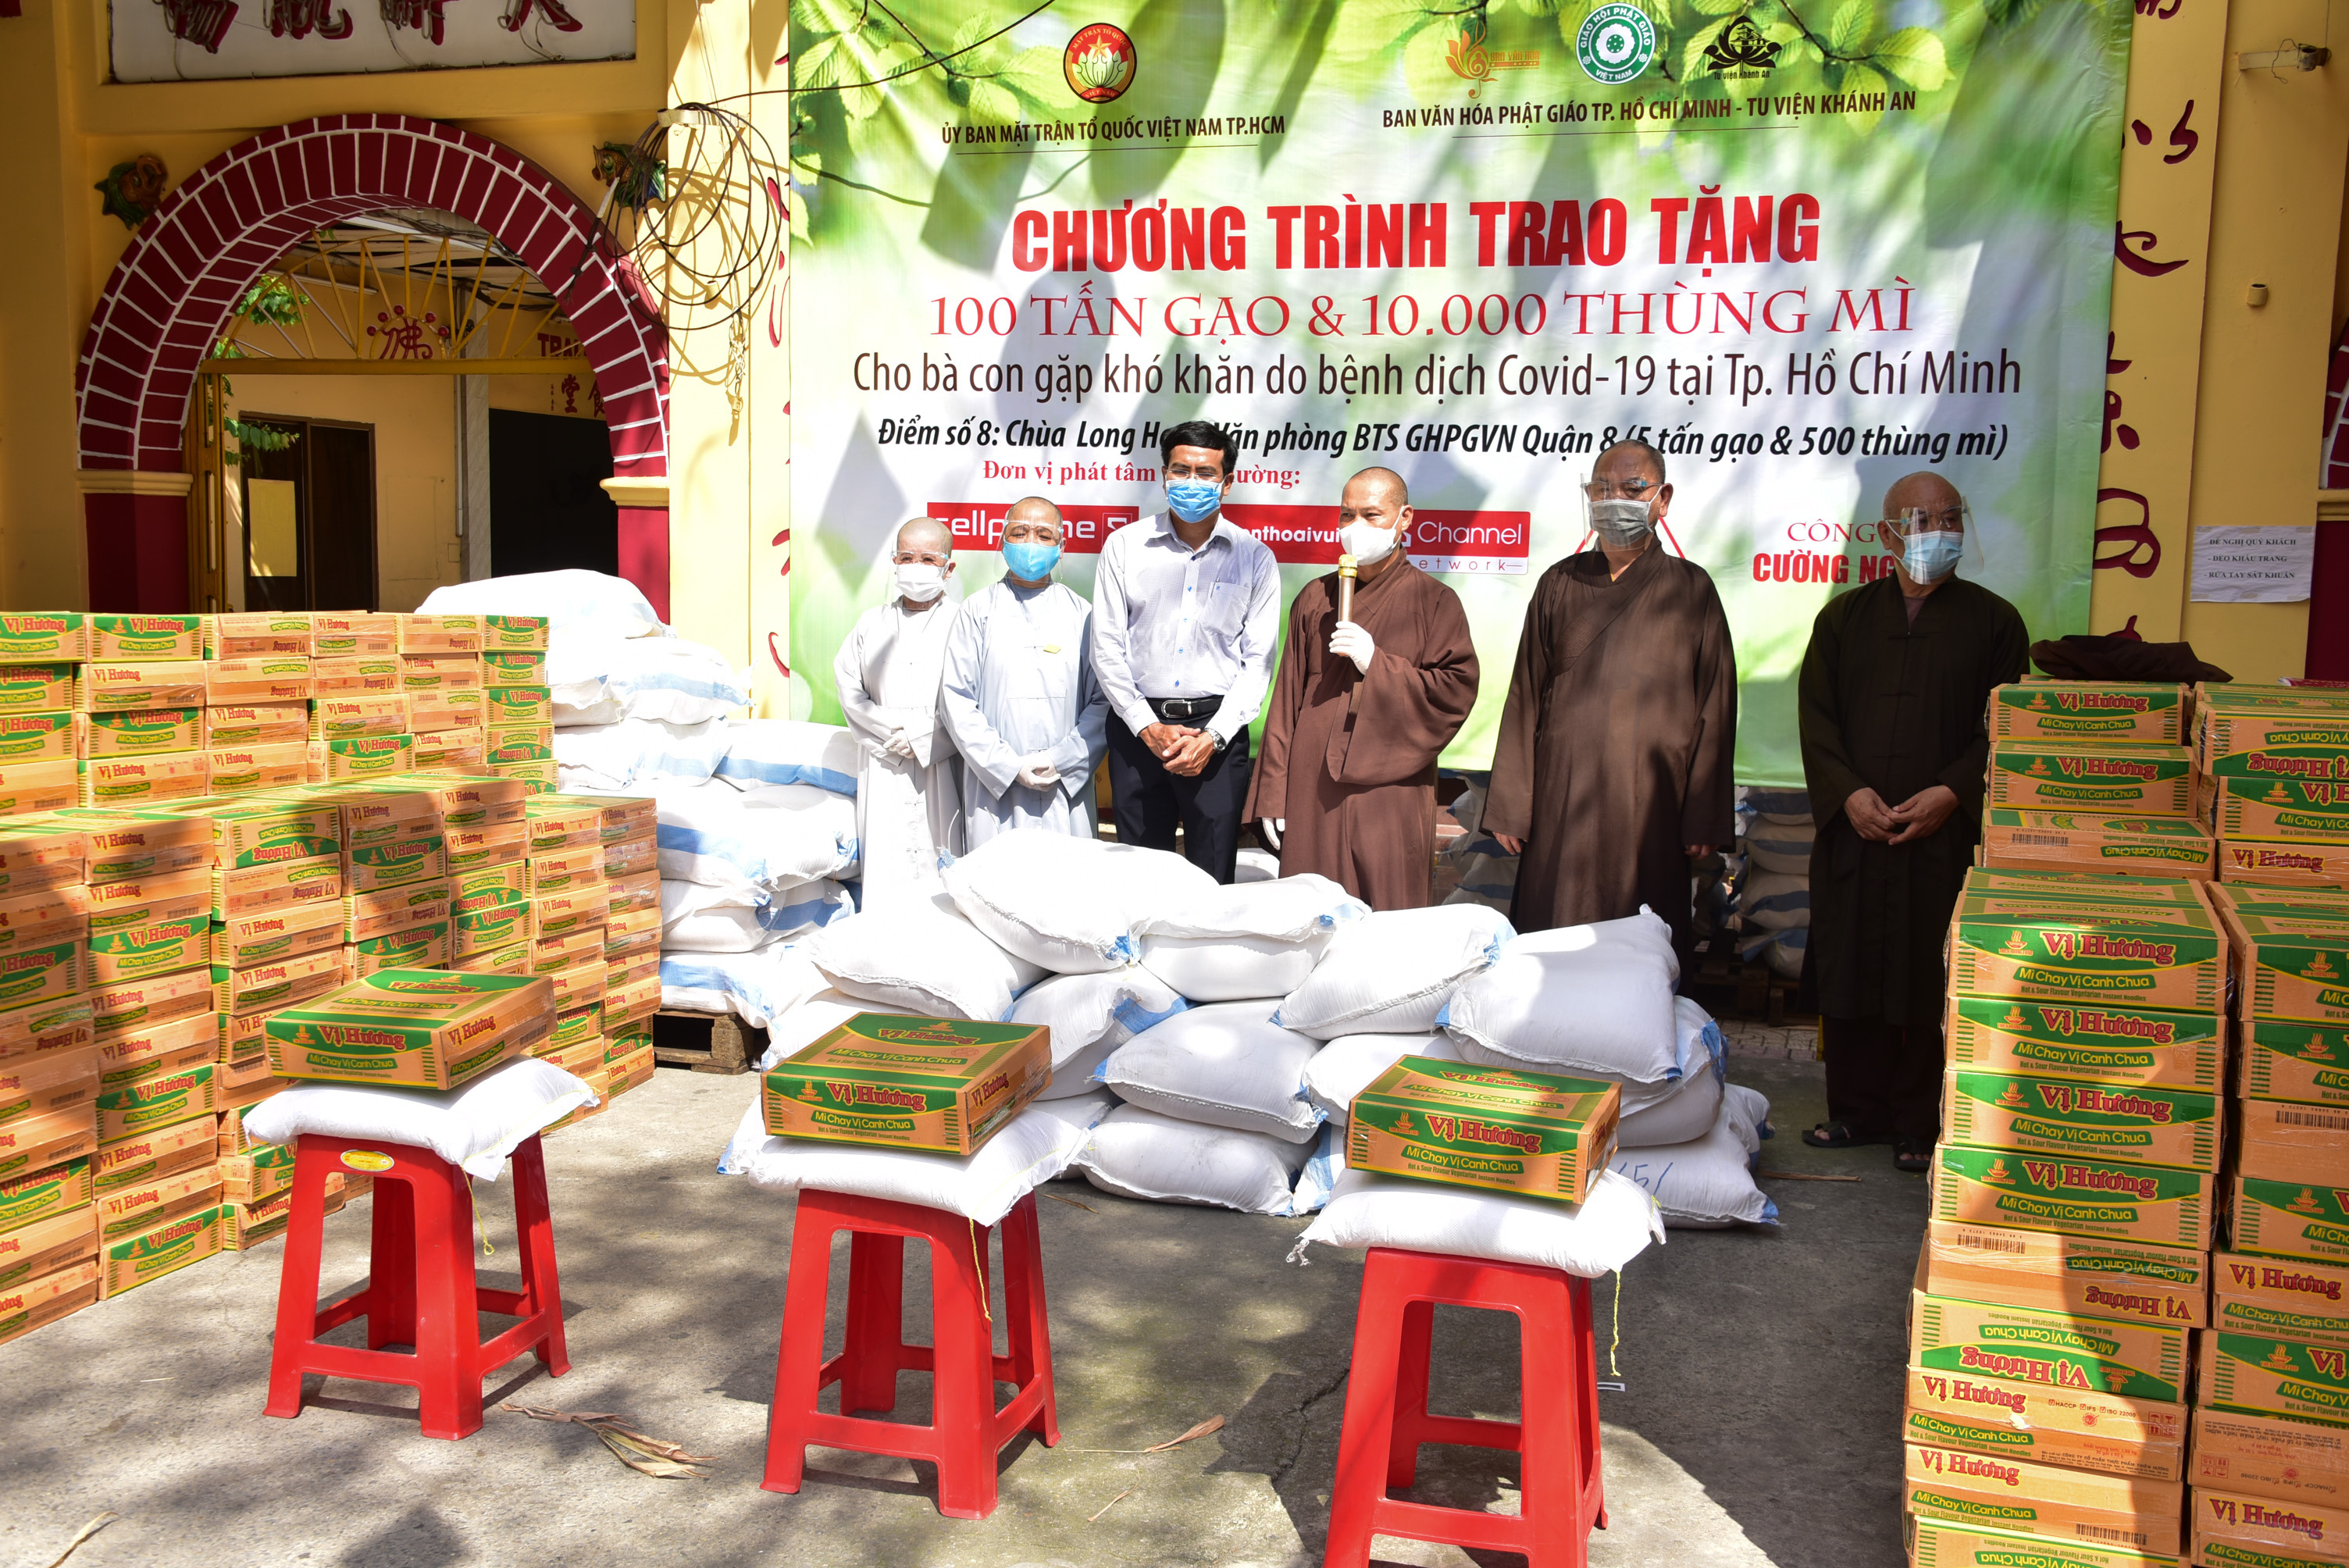 Ban Văn hóa Phật giáo TP.HCM đã tặng 64 tấn gạo, 6.500 thùng mì đến 9 quận, huyện TP.HCM